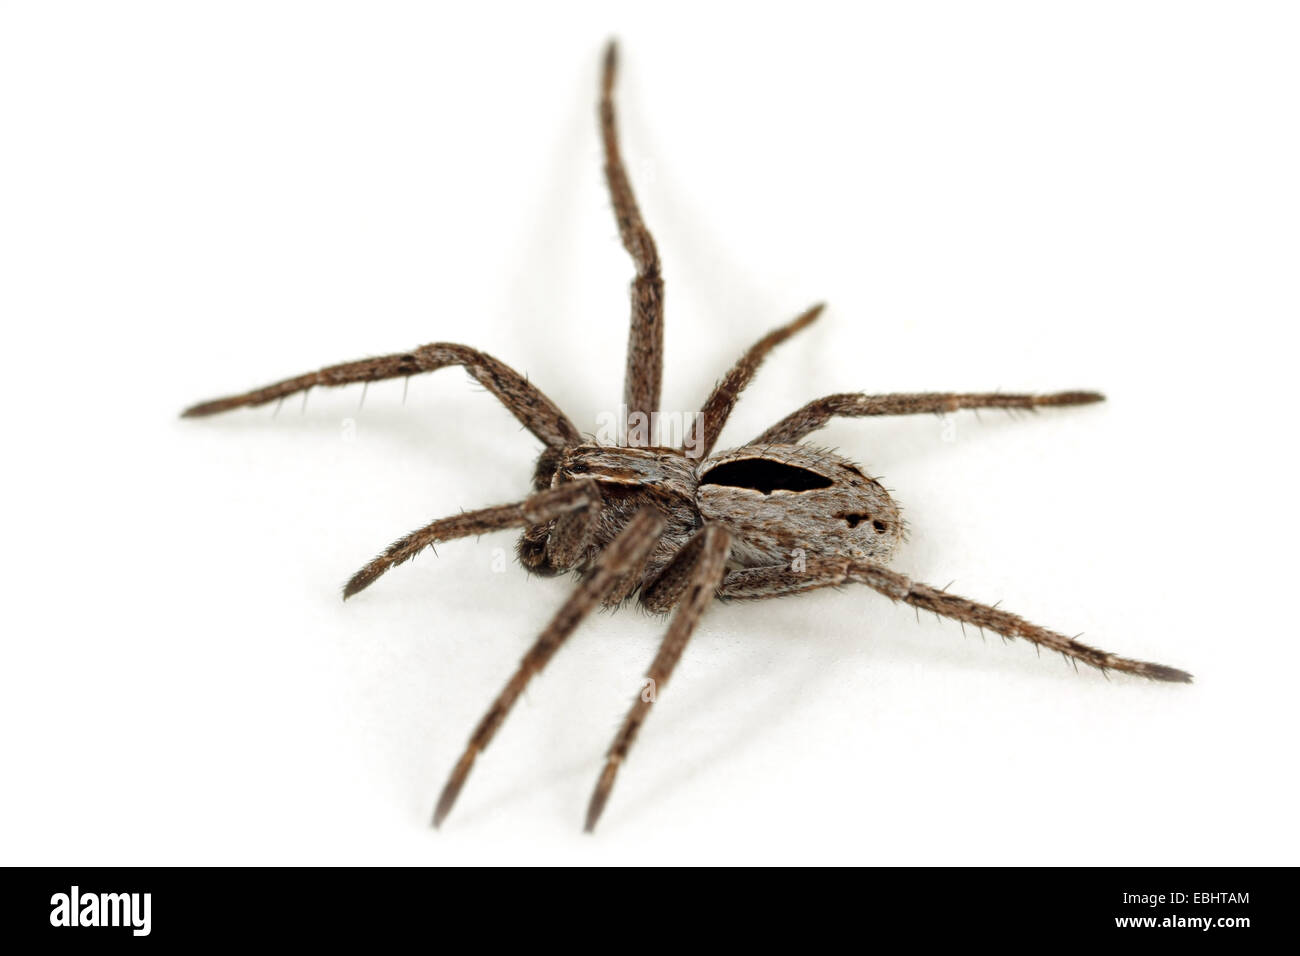 Ein Jugendlicher männlich (Thanatus formicinus) Spinne auf weißem Hintergrund. Diese Spinne ist ein Teil der Familie Philodromidae, Running crab Spiders. Stockfoto